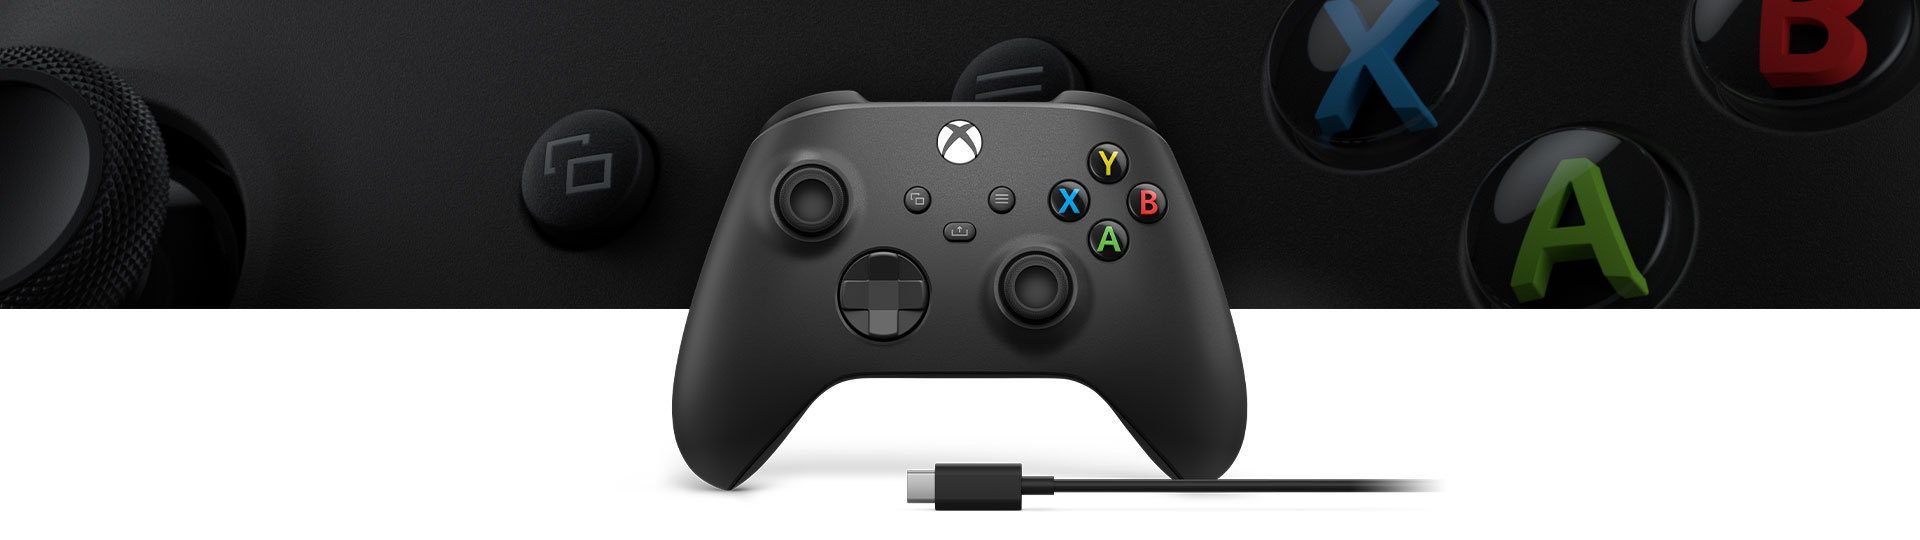 Xbox беспроводной контроллер + кабель USB-C® с крупным планом текстуры поверхности контроллера